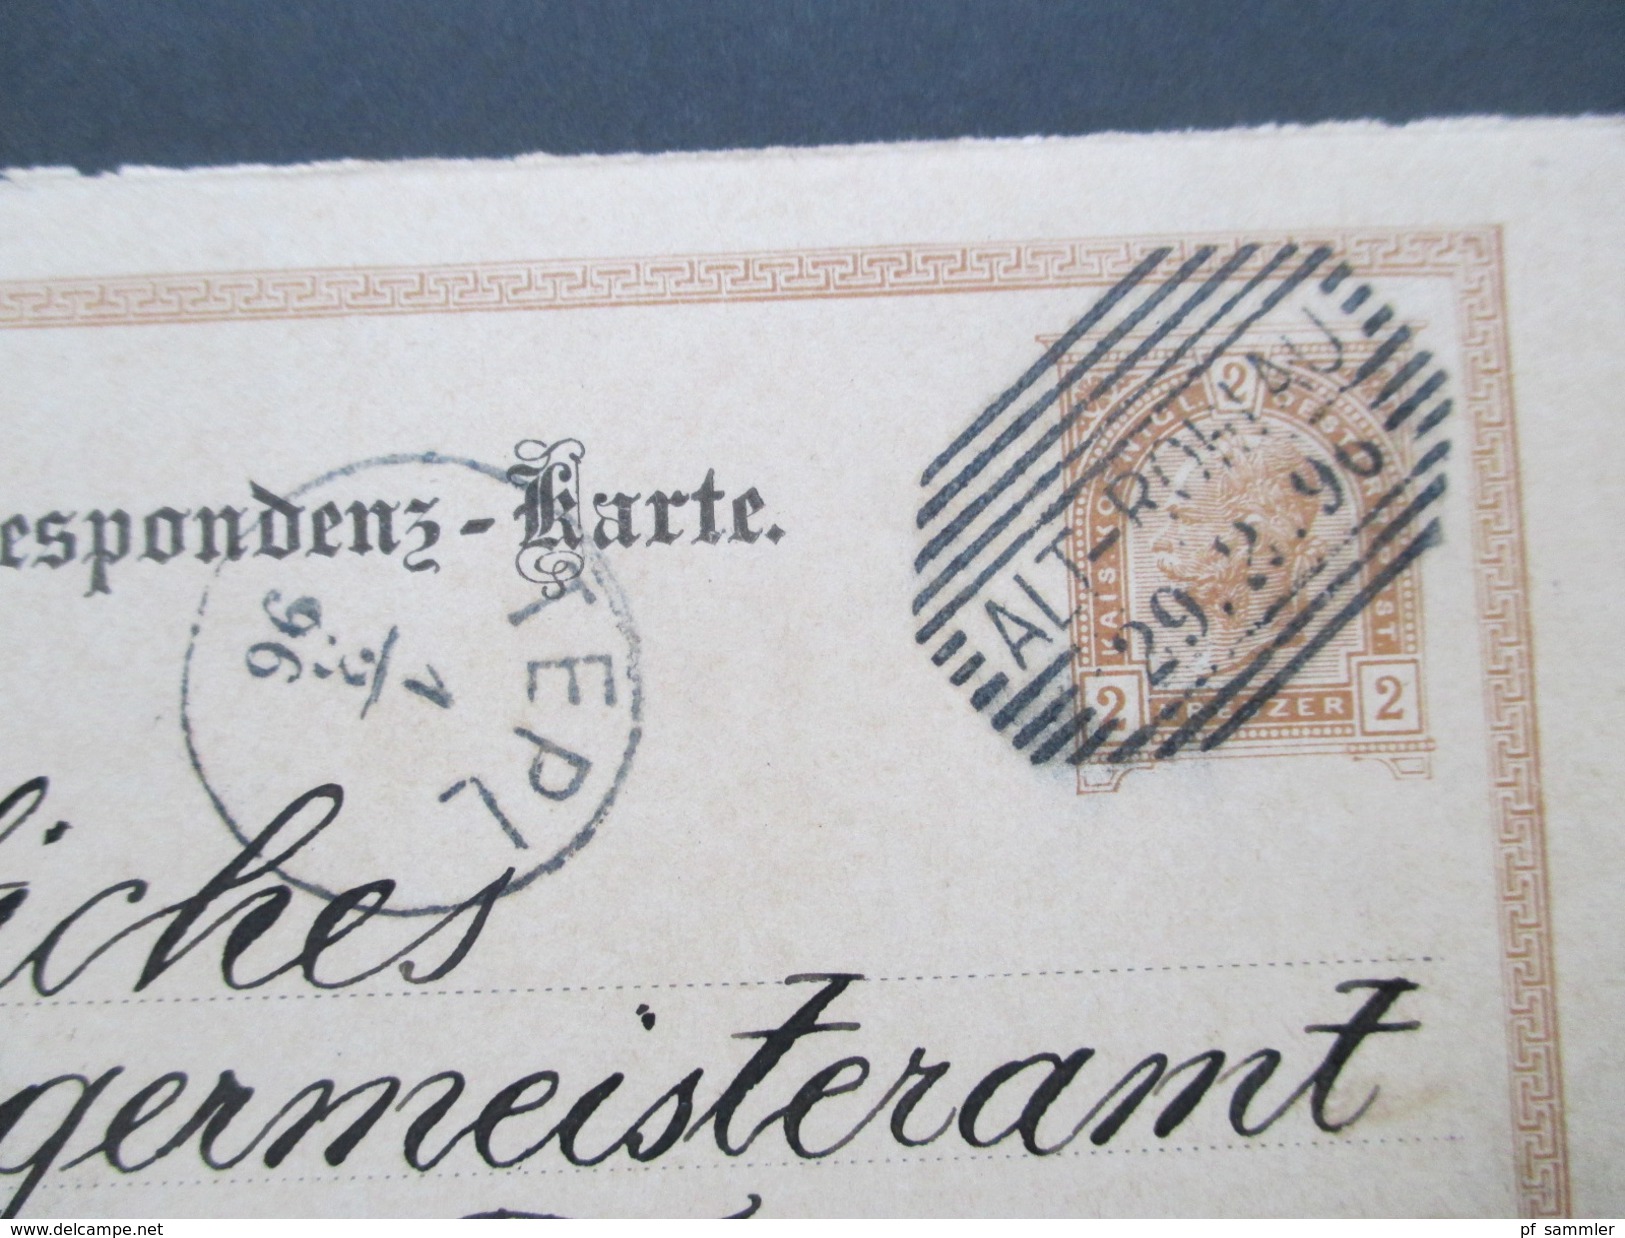 Österreich 1896 Ganzsache Fragekarte Alt-Rohlau - Teplitz An Das Bürgermeisteramt.  Bei Marienbad. Strich Stempel - Briefe U. Dokumente